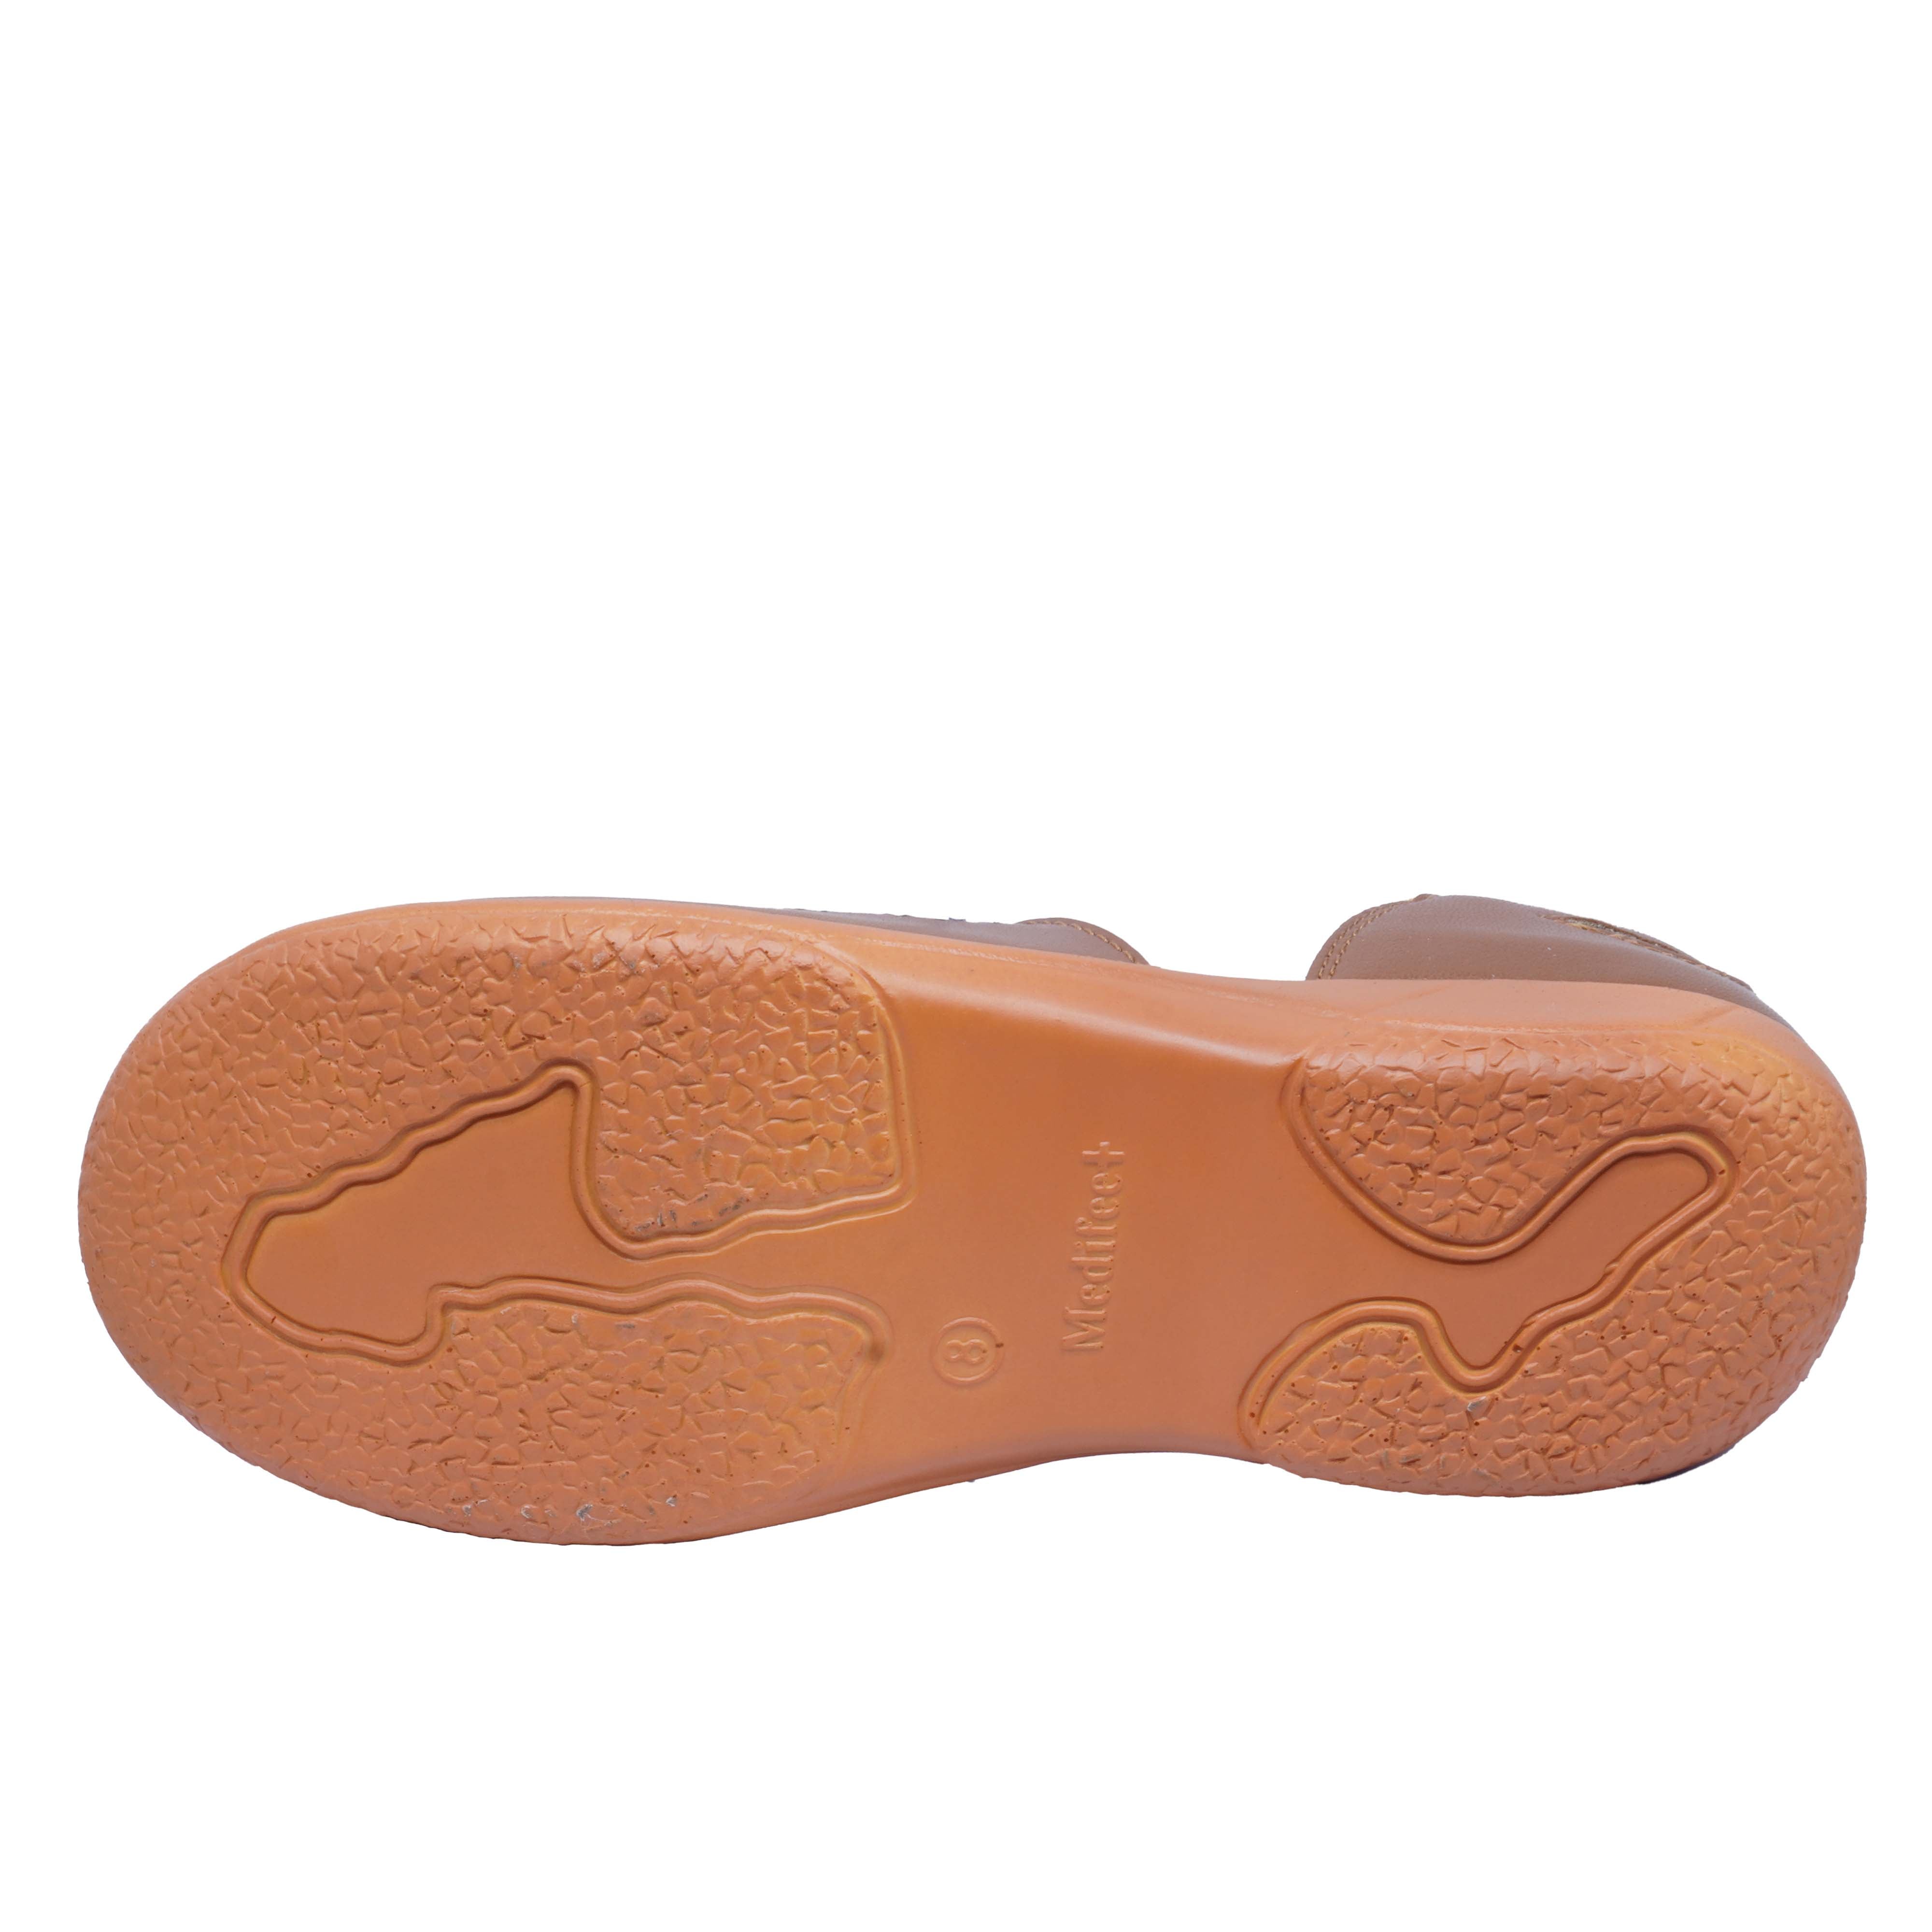 Buy diabetic footwear,metatarsal sandals for ladies online in india –  Cromostyle.com